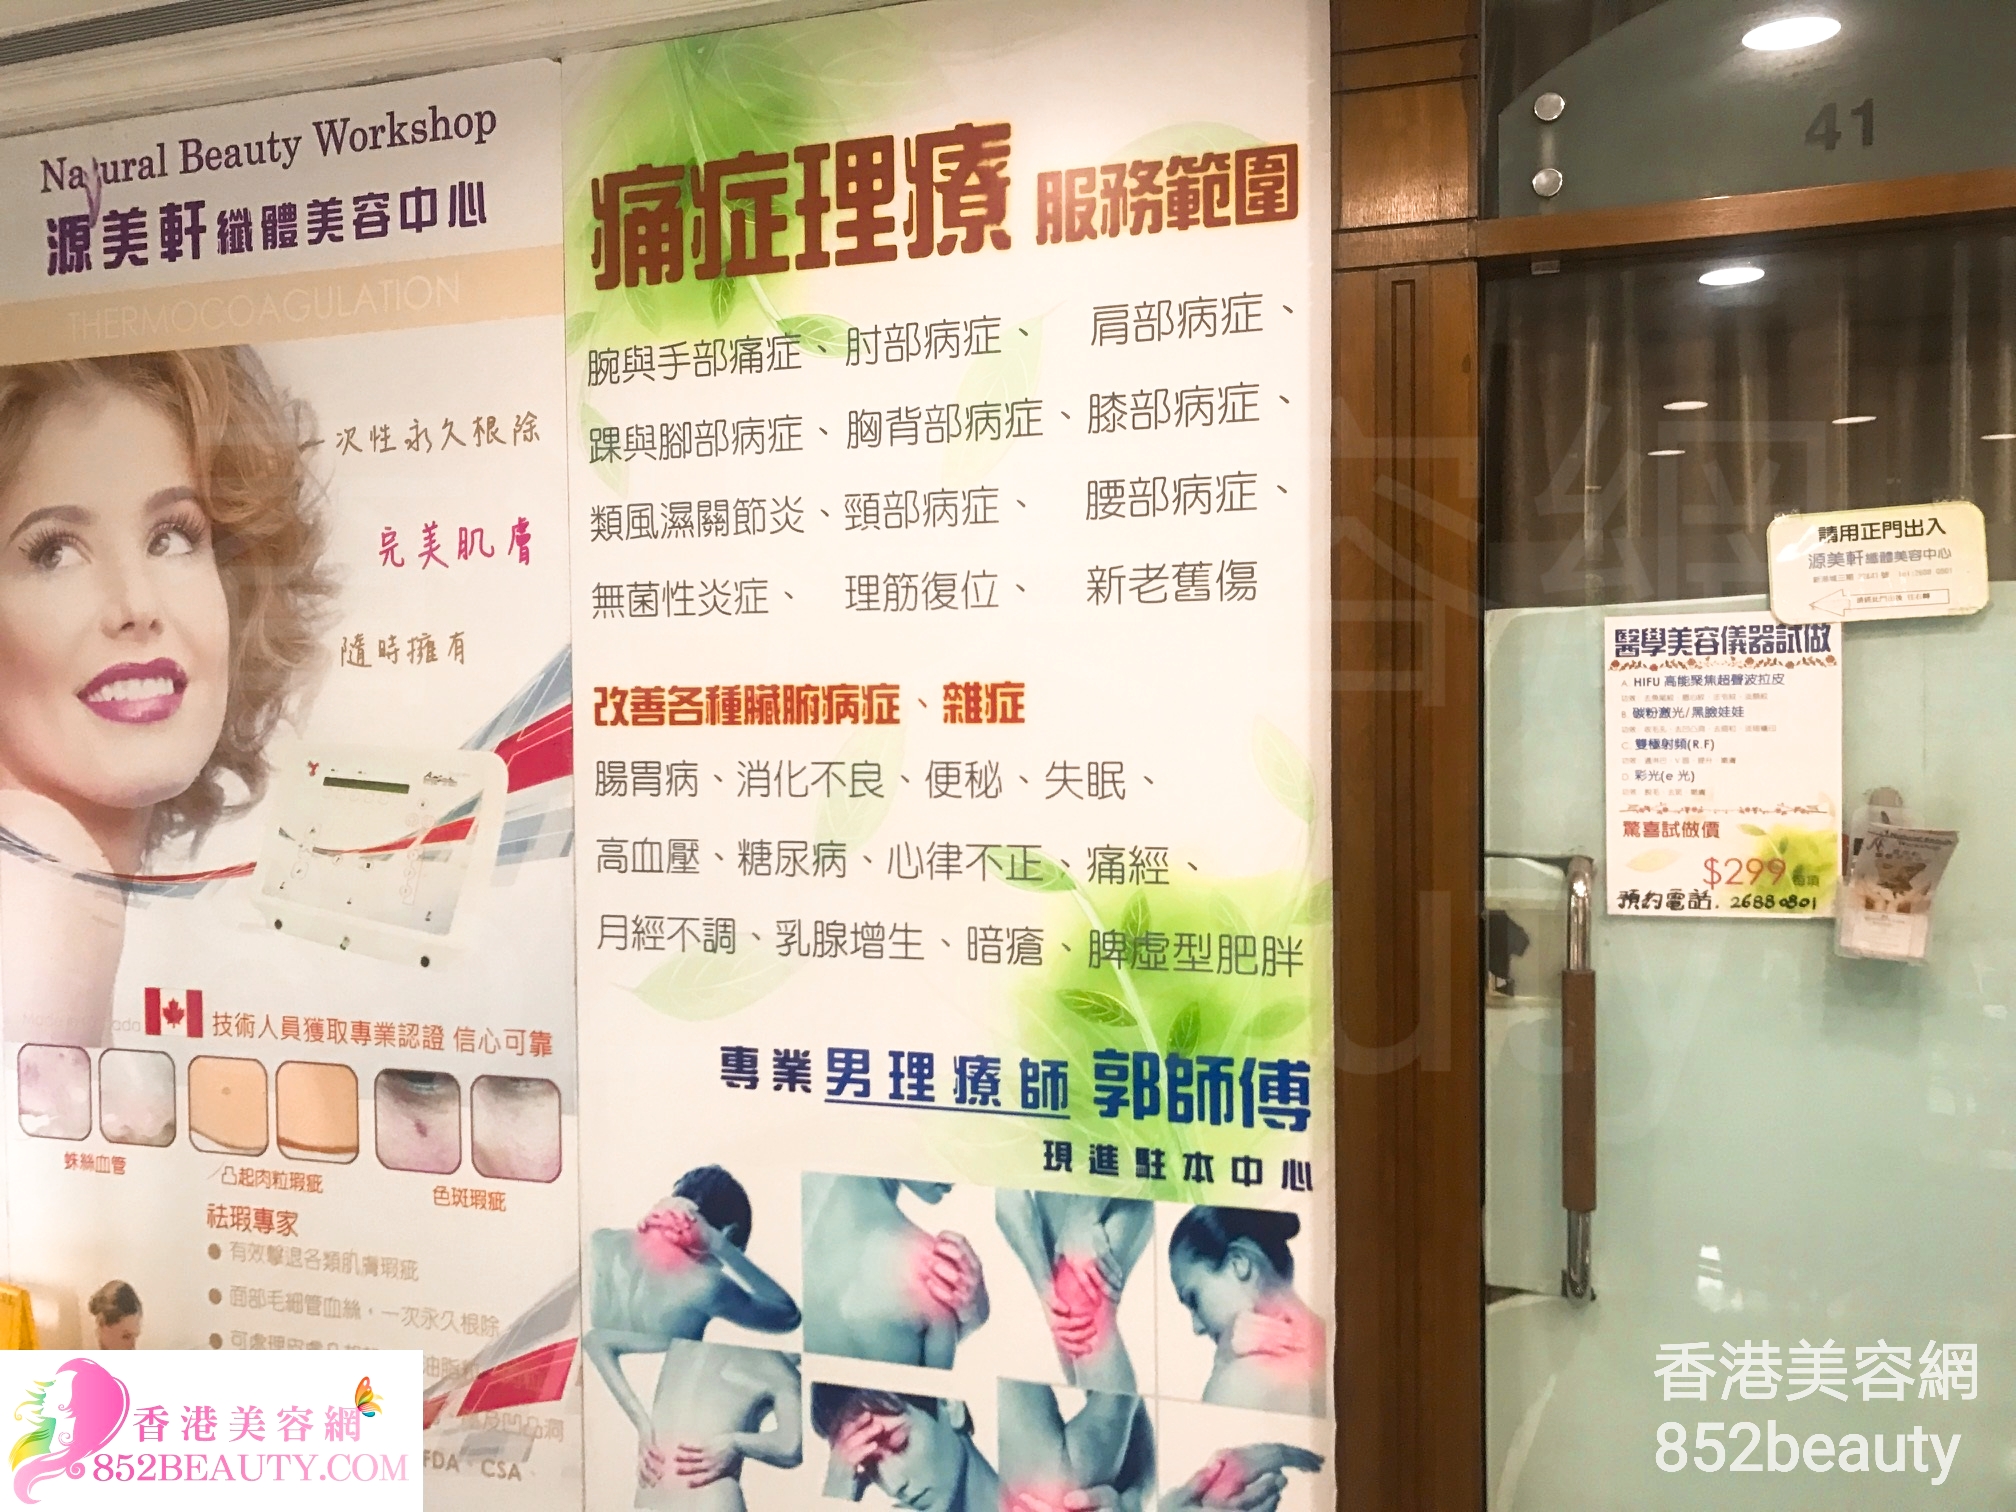 Facial Care: 源美軒纖體美容中心（新港城） Natural Beauty Workshop